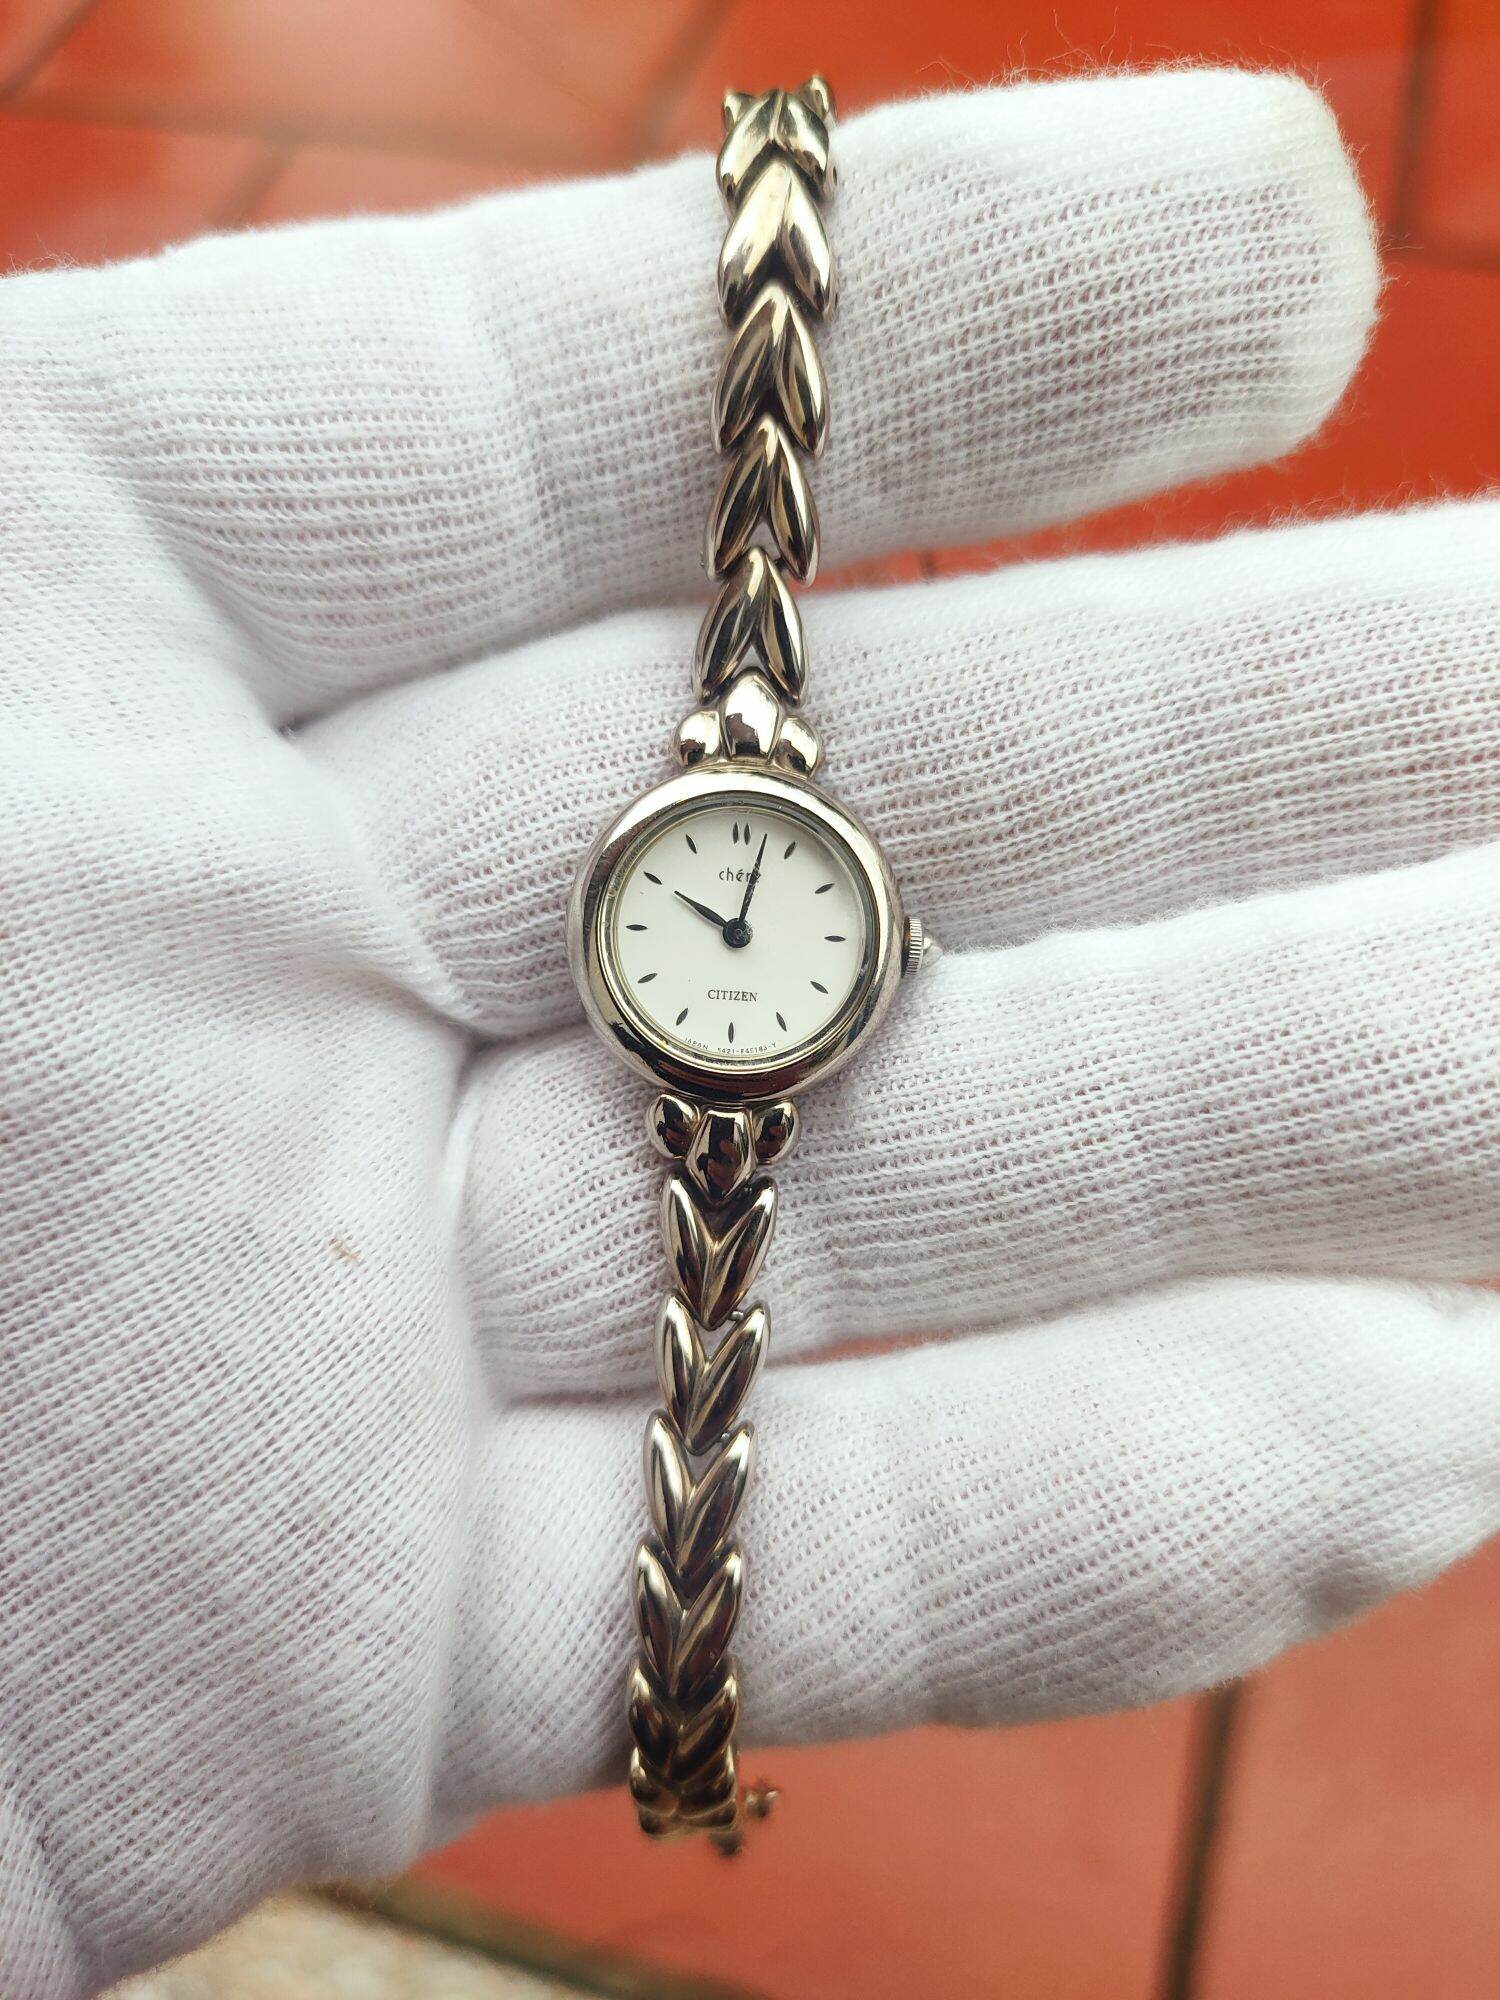 đồng hồ citizen nữ , dạng lắc cực đẹp, size 20mm, dây khóa zin